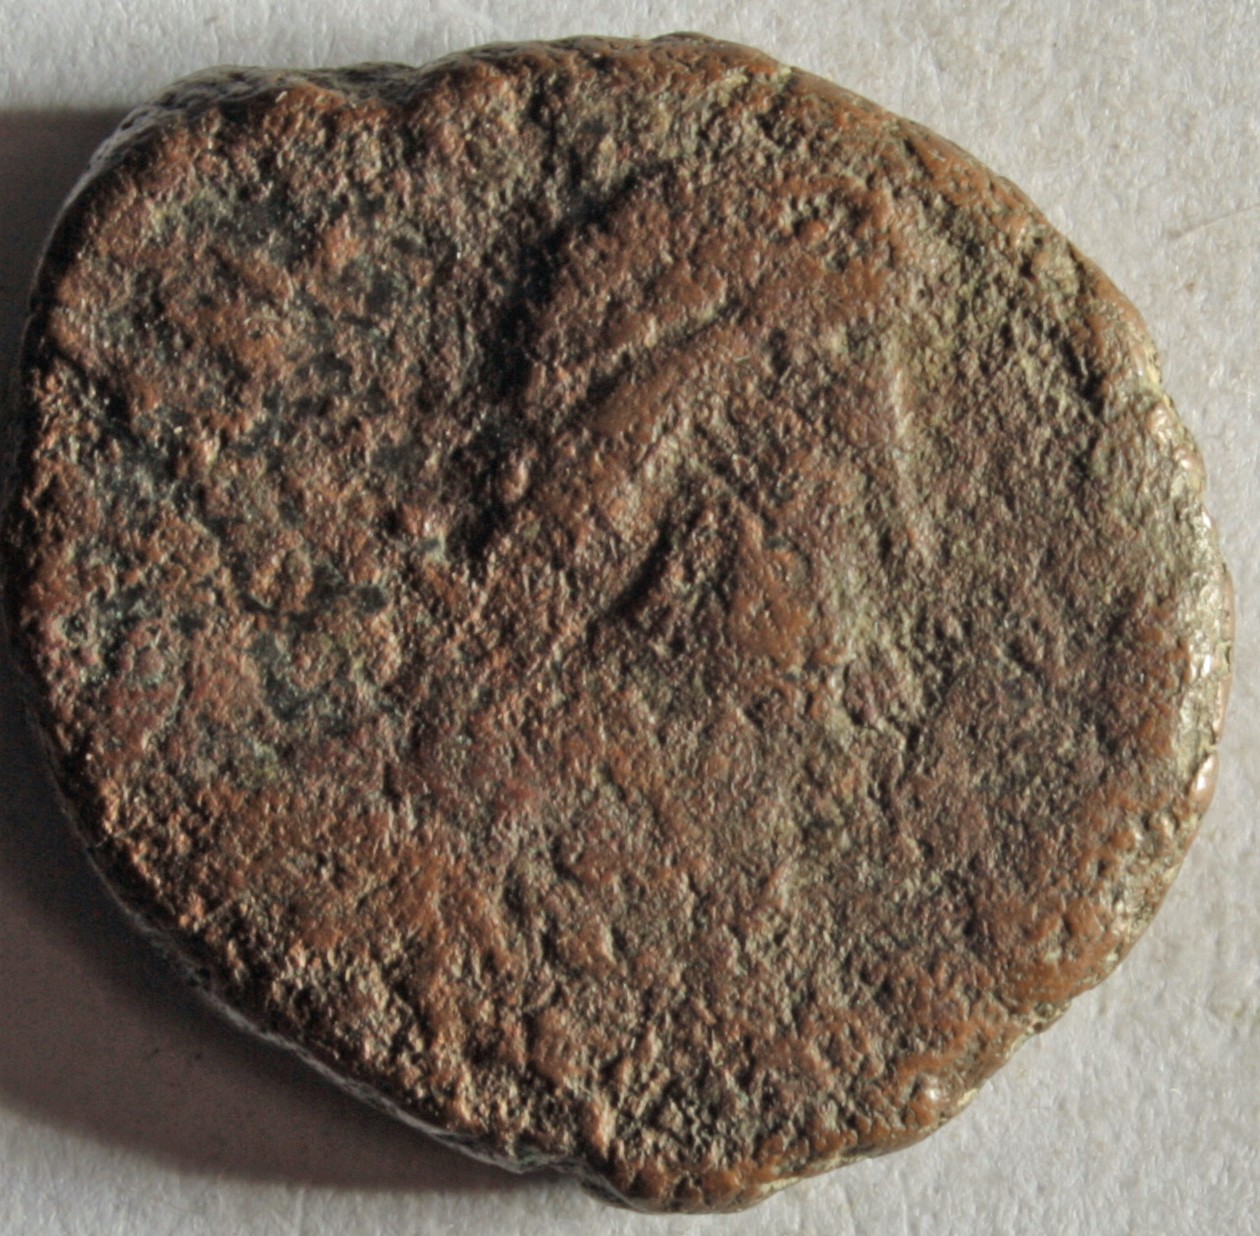 Römische Münze, Nominal Maiorina, Prägeherr Magnus Maximus, Prägeort nicht bestimmbar, Fälschung (Museumsgesellschaft Bad Dürkheim e.V. CC BY-NC-SA)